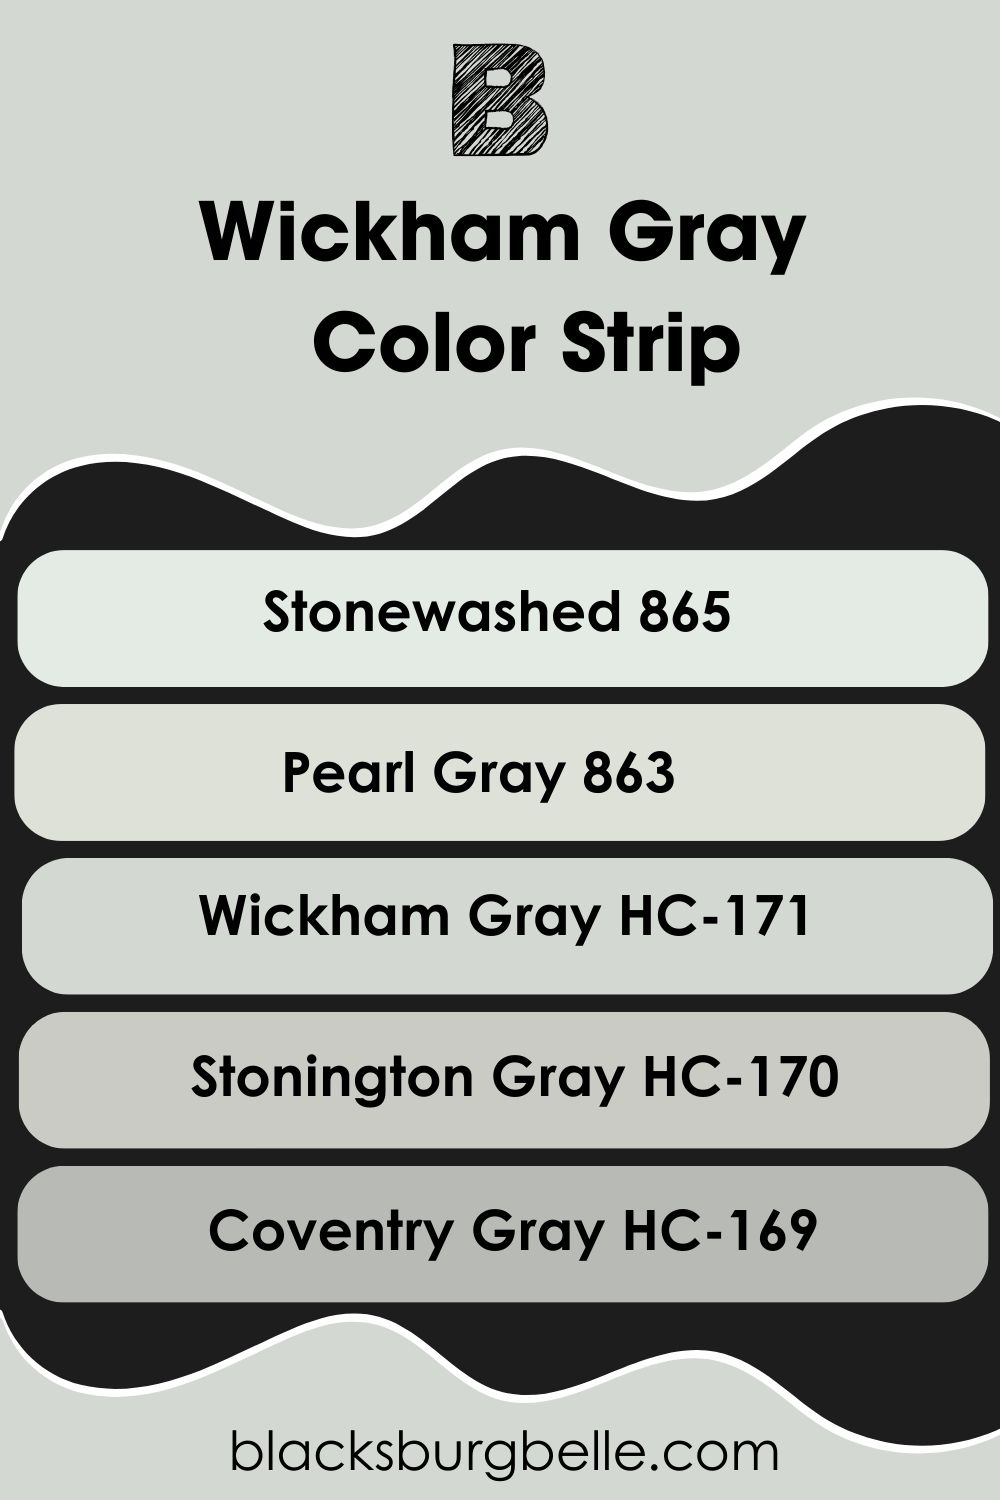 Wickham Gray Color Strip